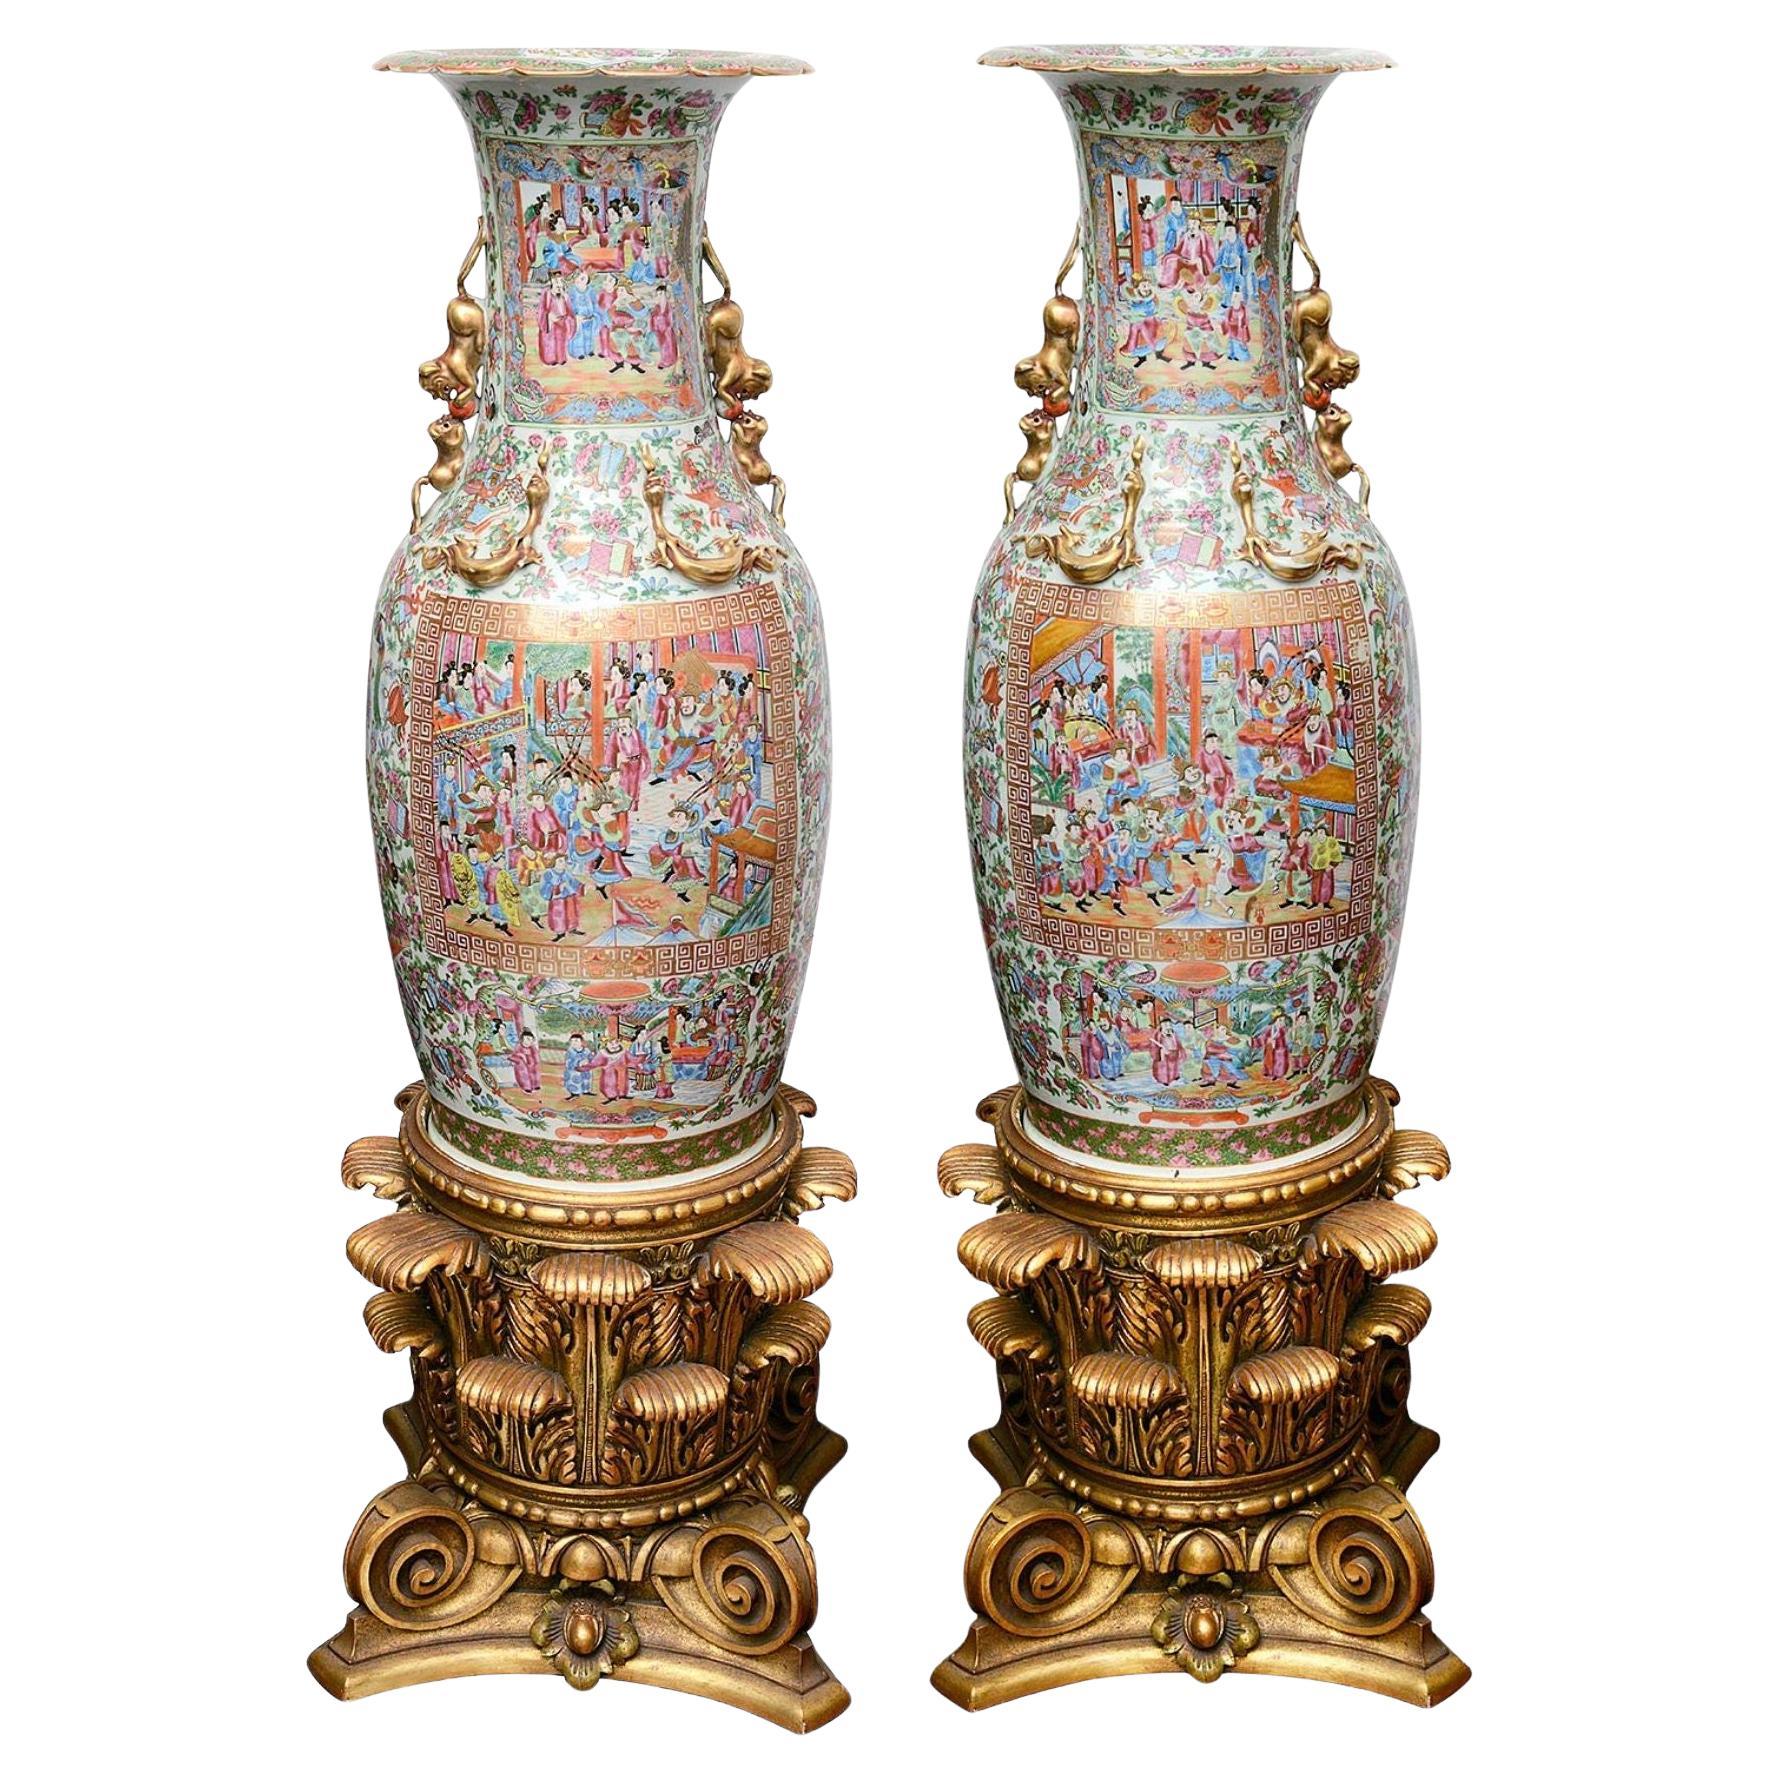 Grande paire de vases à médaillons roses du 19ème siècle sur pied.